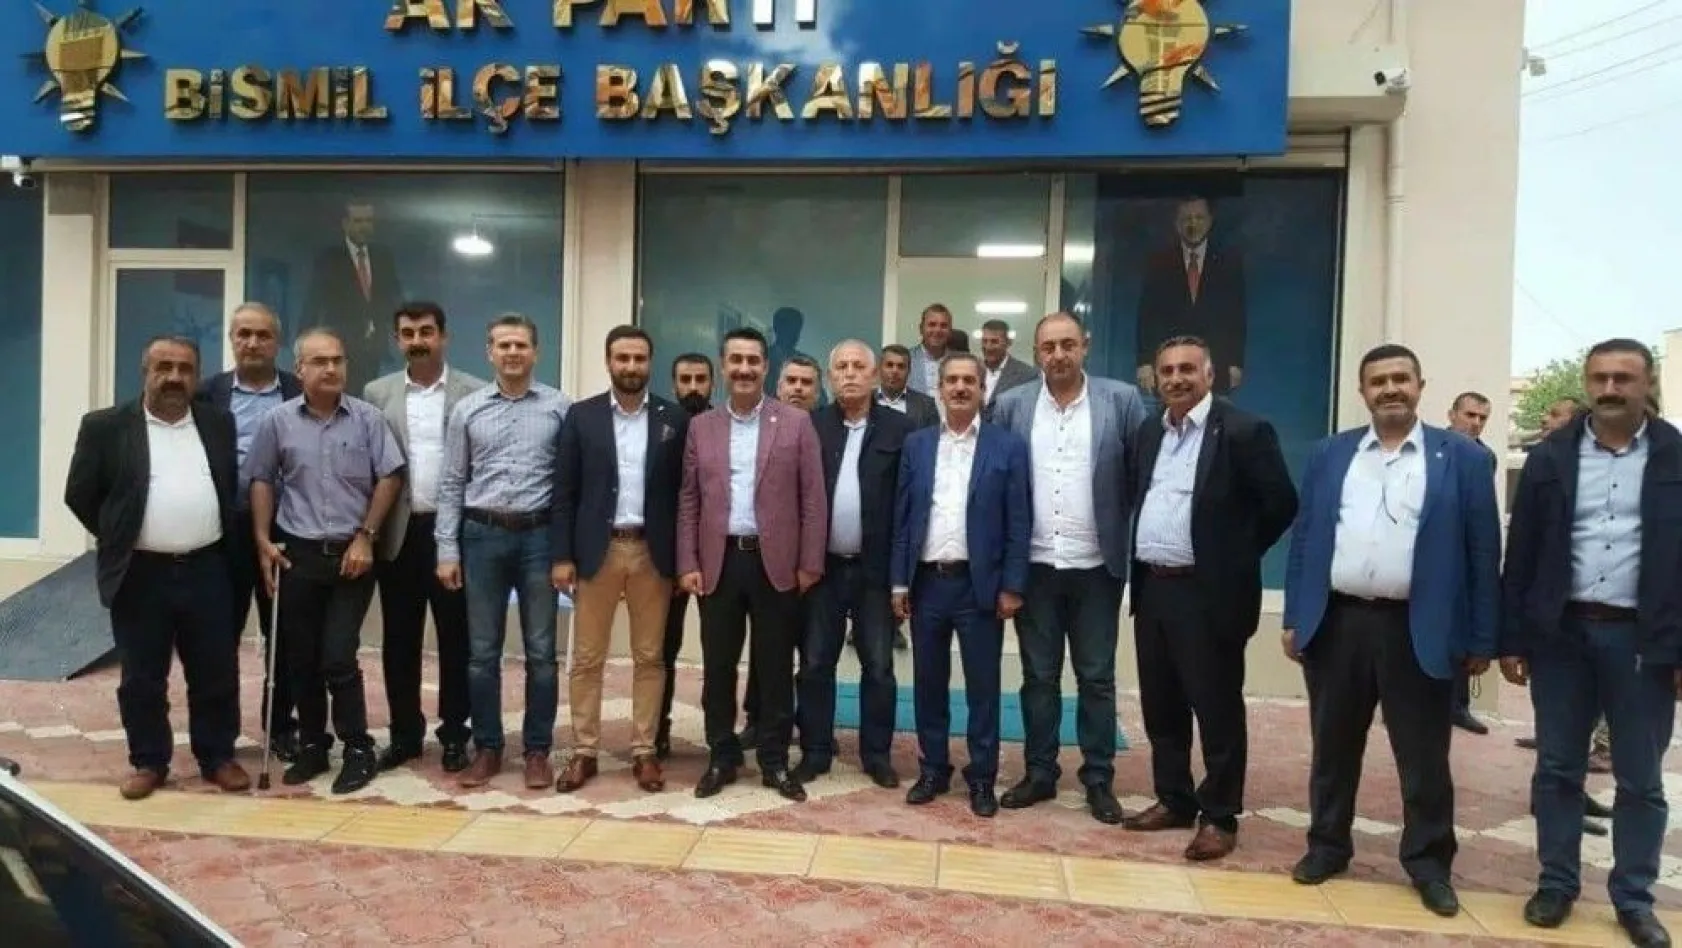 Nasıranlı, AK Parti Diyarbakır milletvekili aday adayı oldu
